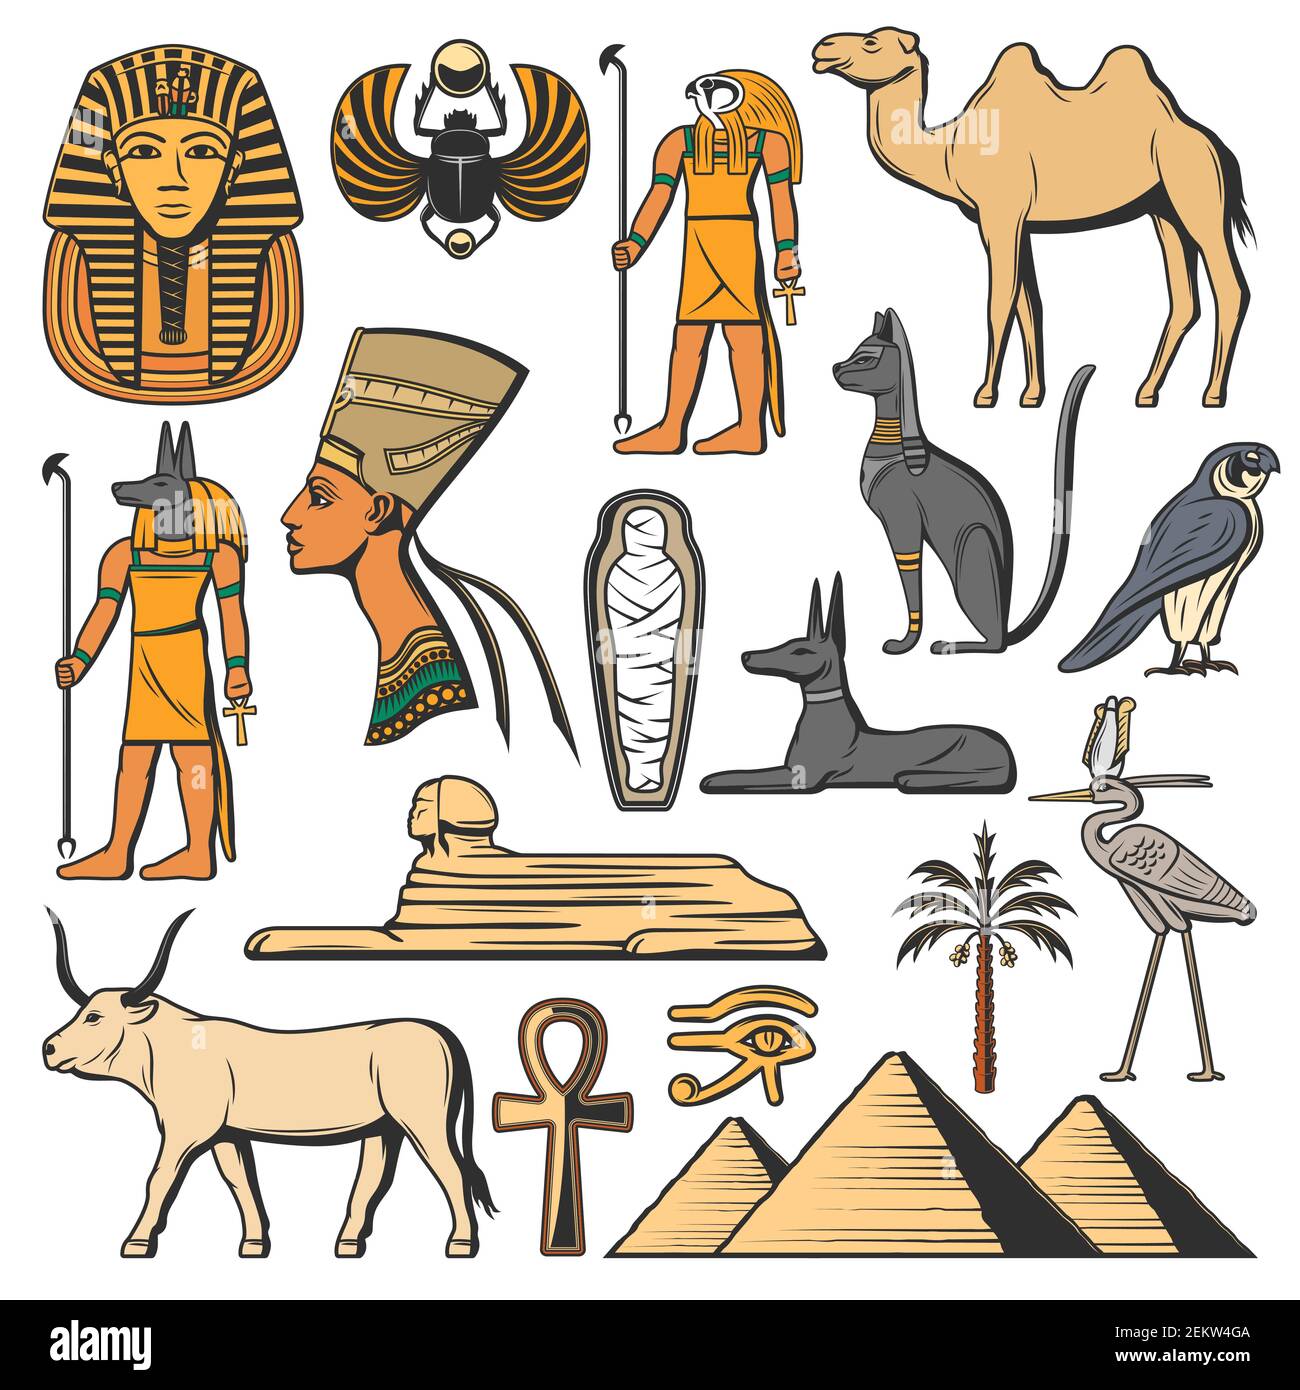 Ägyptischer pharao, Pyramiden und Götter. Alte Ägypten Vektor-Symbole. Sphinx, Katze und Mumie, Auge des Horus, Anubis und Ankh Hieroglyph, Tutanchamun, Noferti Stock Vektor